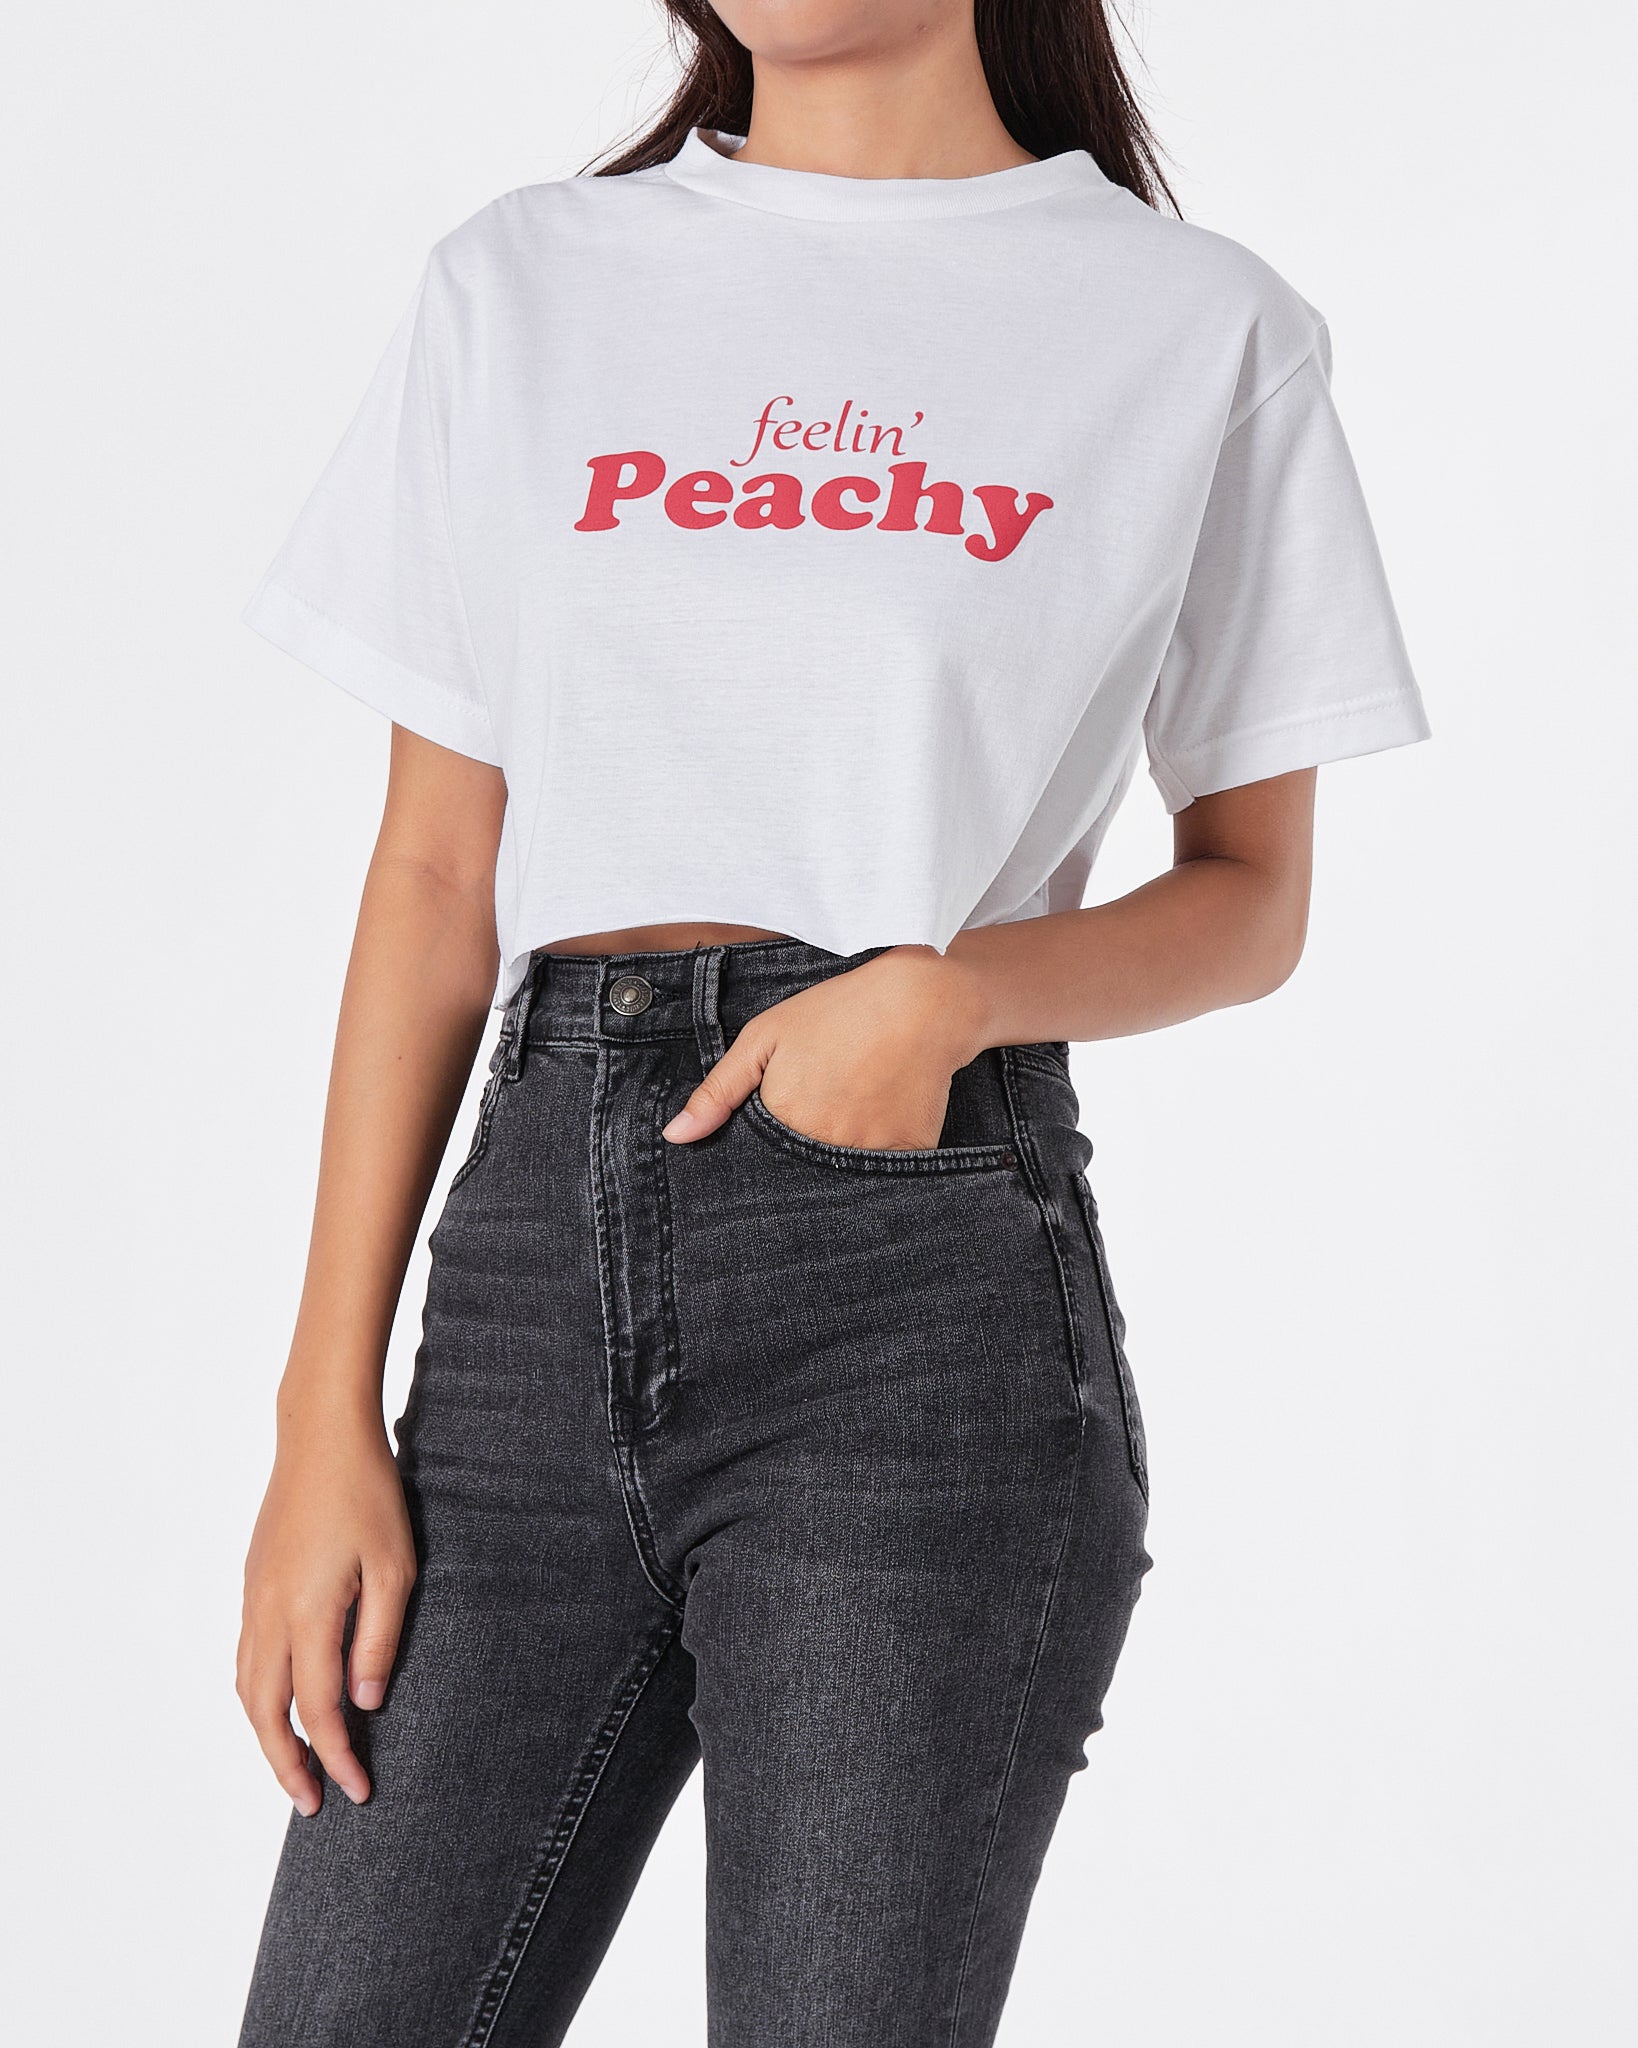 Peachy Lady White T-Shirt Crop Top 9.90